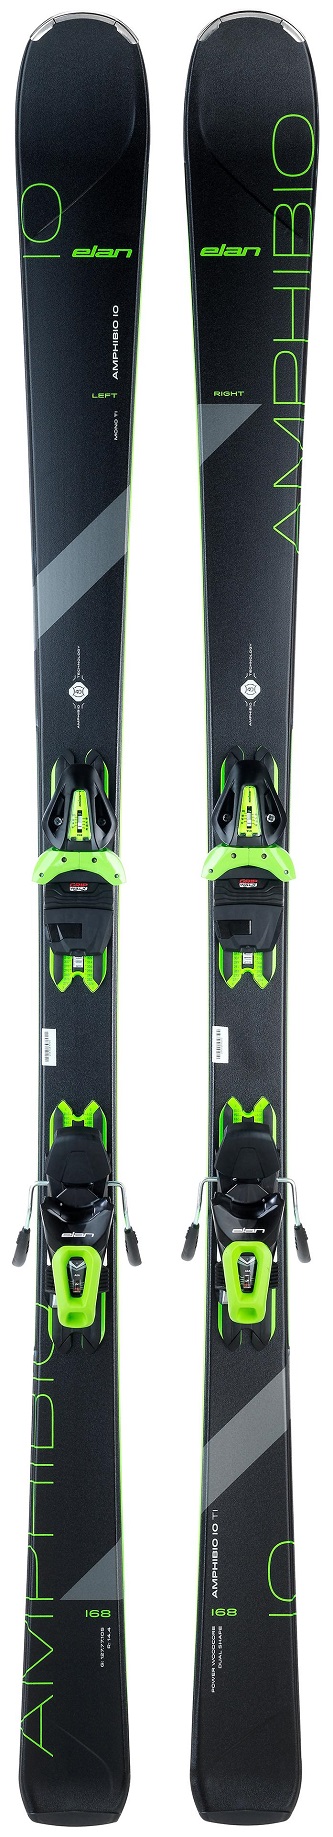 Горные лыжи Elan Amphibio 10Ti Powershift + El 10 GW Shift 2021, black/green, 168 см